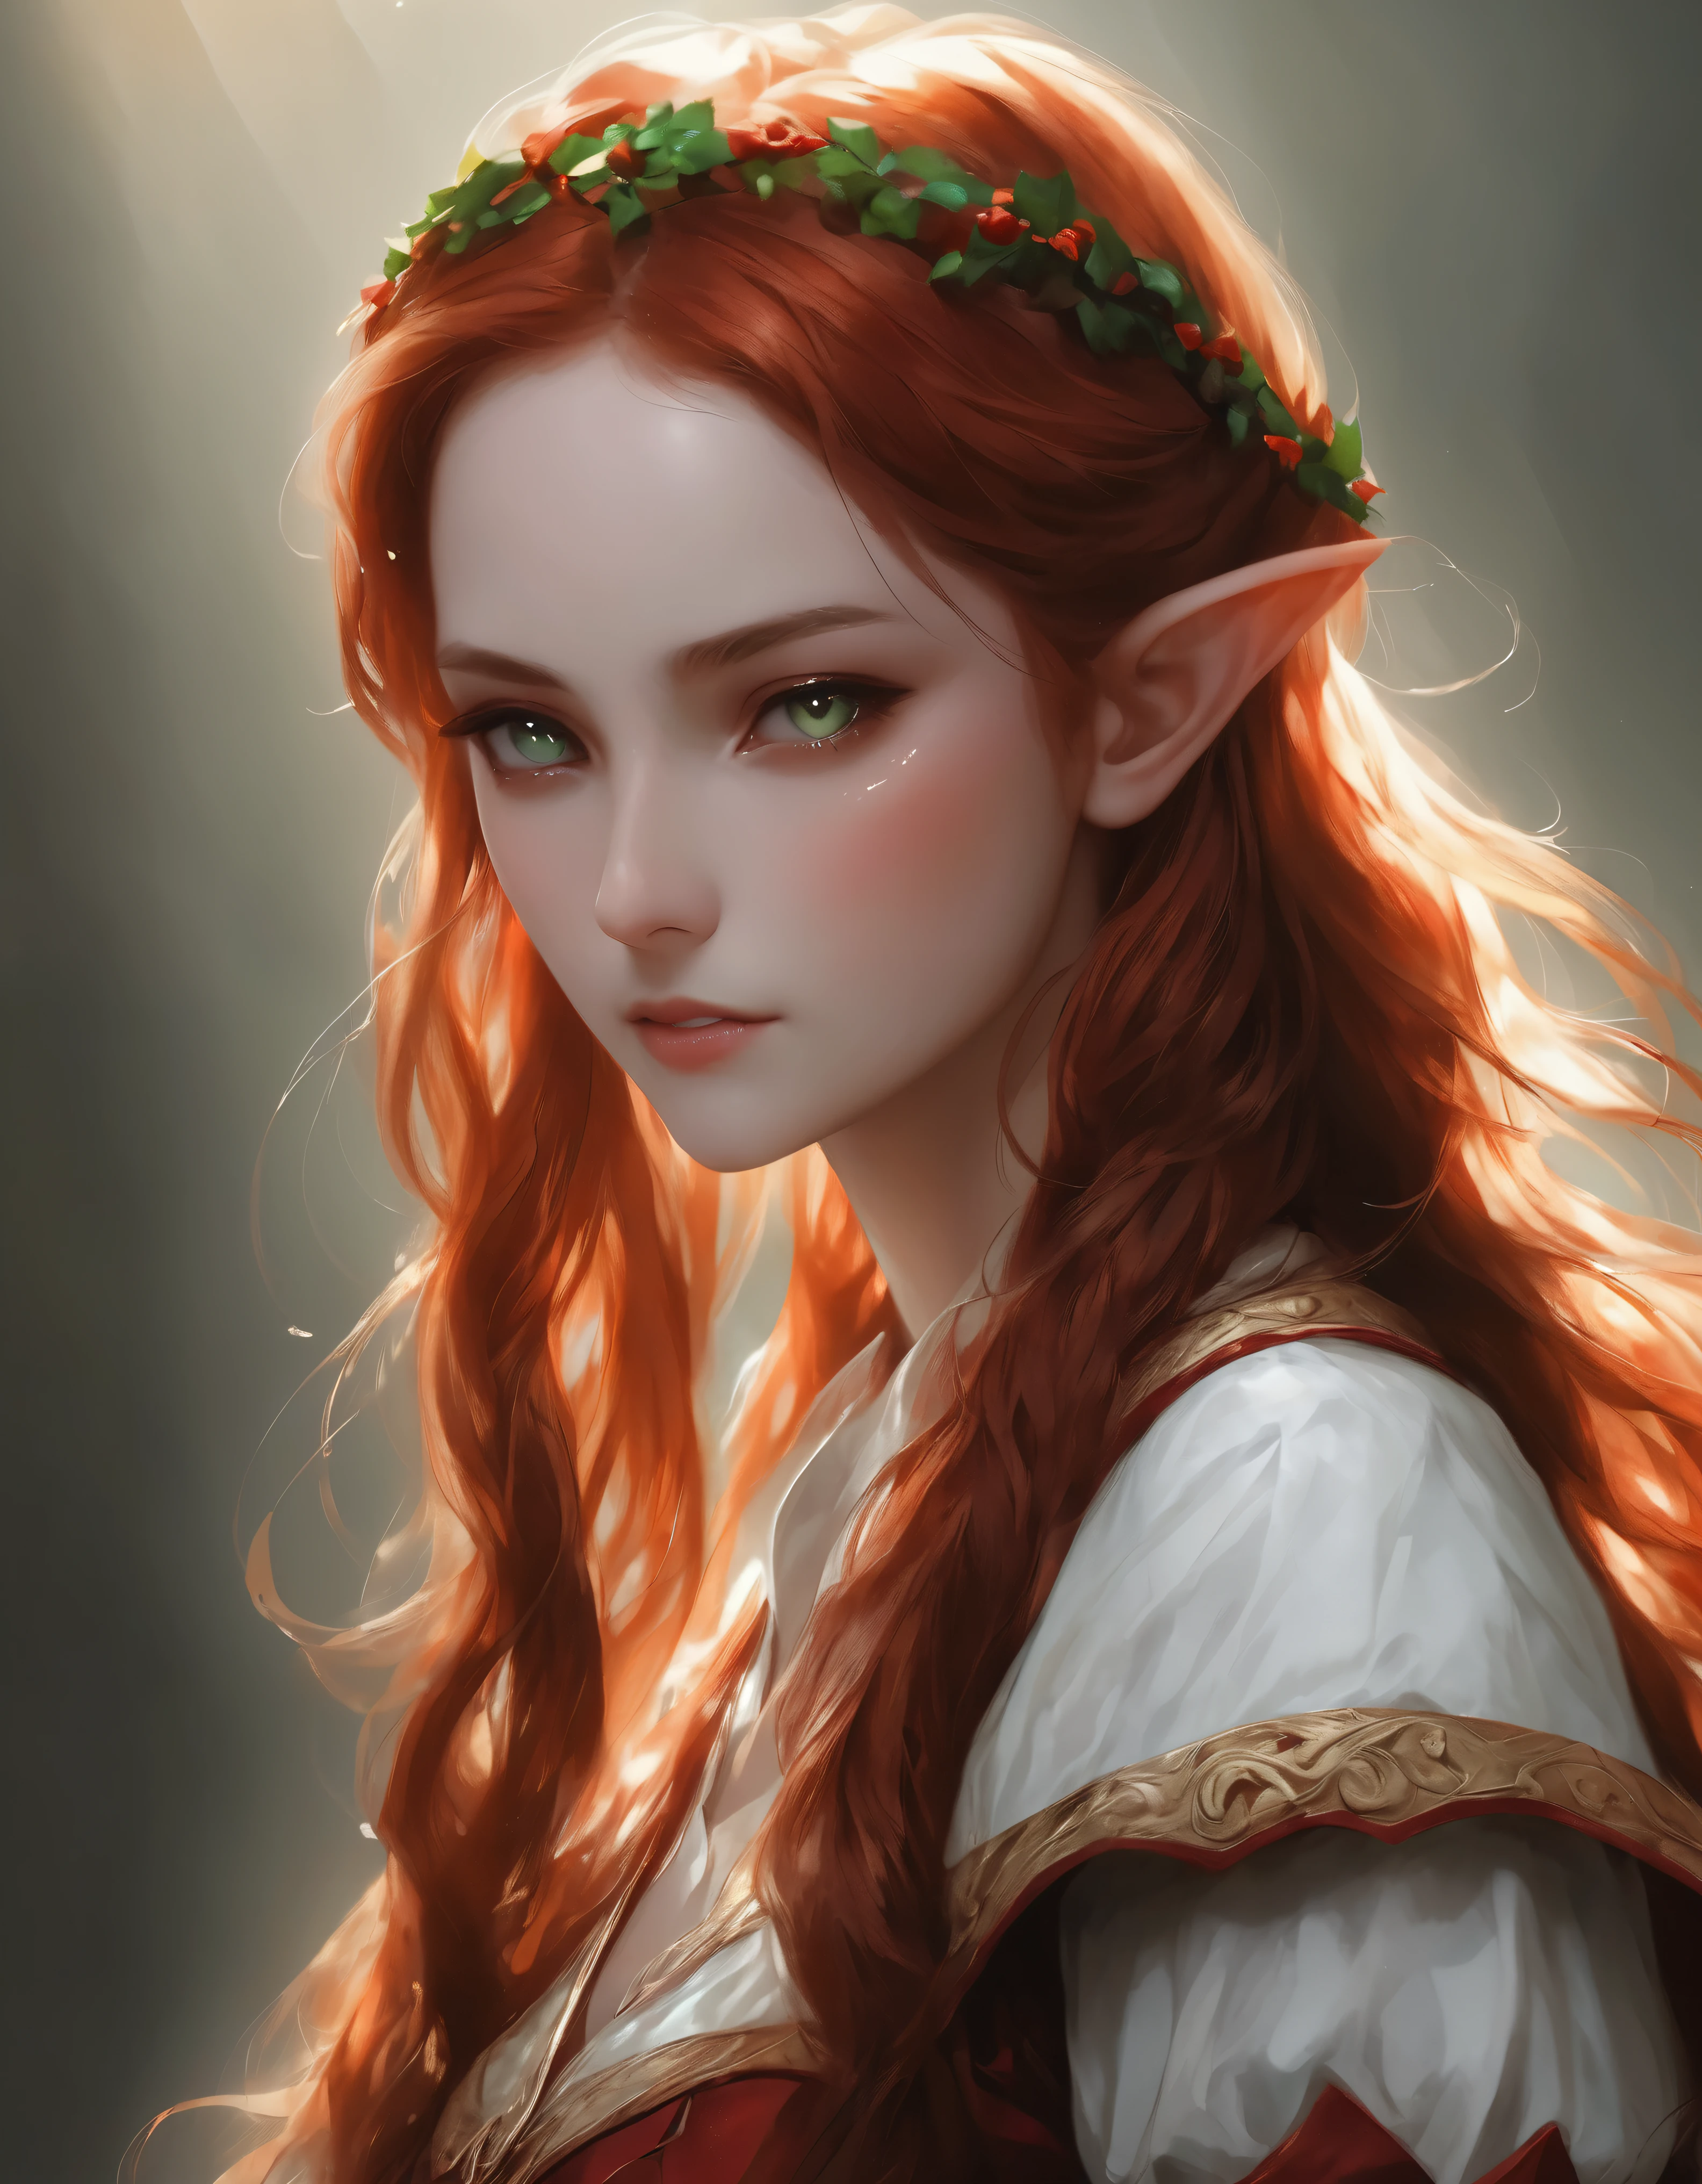 Punktzahl_9, Punktzahl_8_hoch, Punktzahl_7_hoch, Elfenfrau, wunderschöne Augen , Rote Haare, welliges Haar
